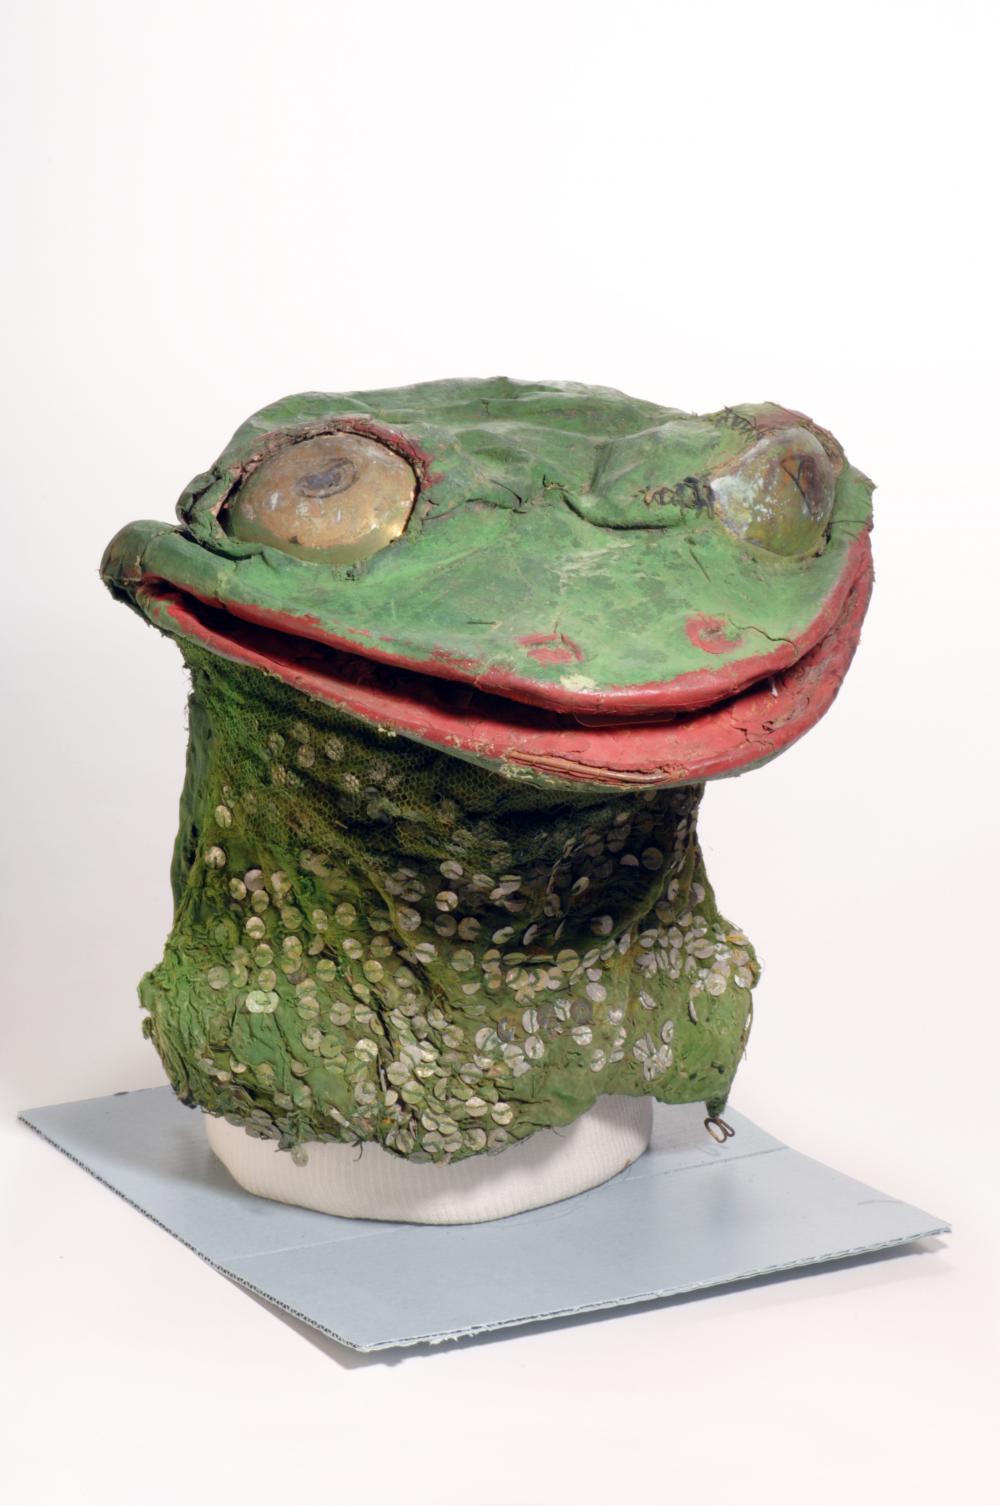 Frog lady costume mask